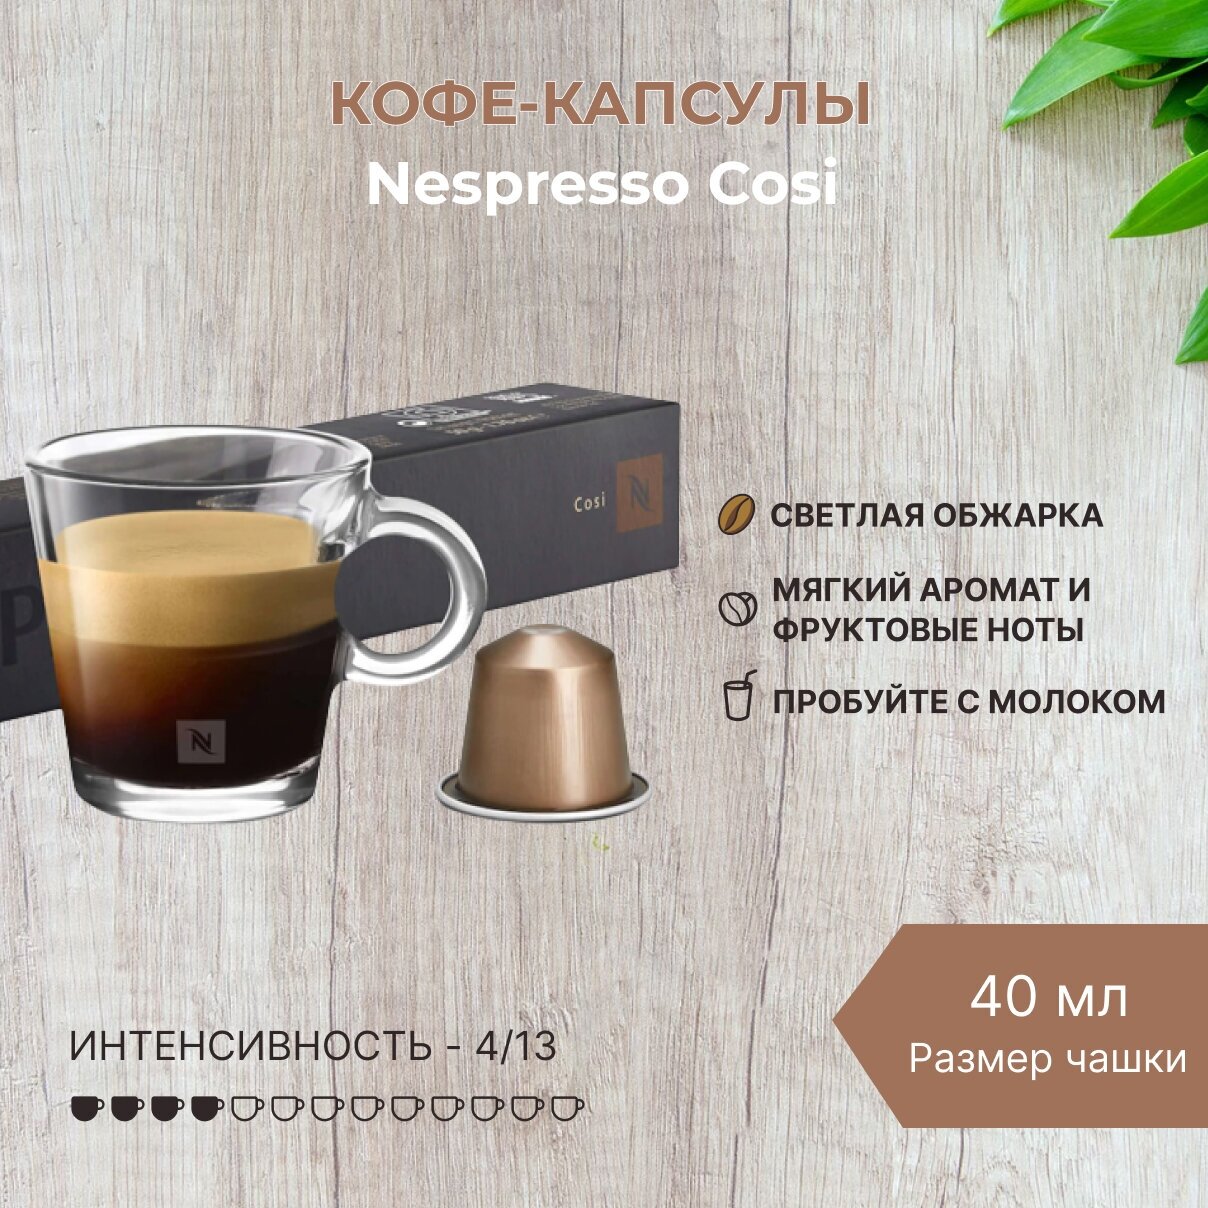 Кофе в капсулах Nespresso Cosi 40мл. 4/13 набор капсул Неспрессо 10 шт